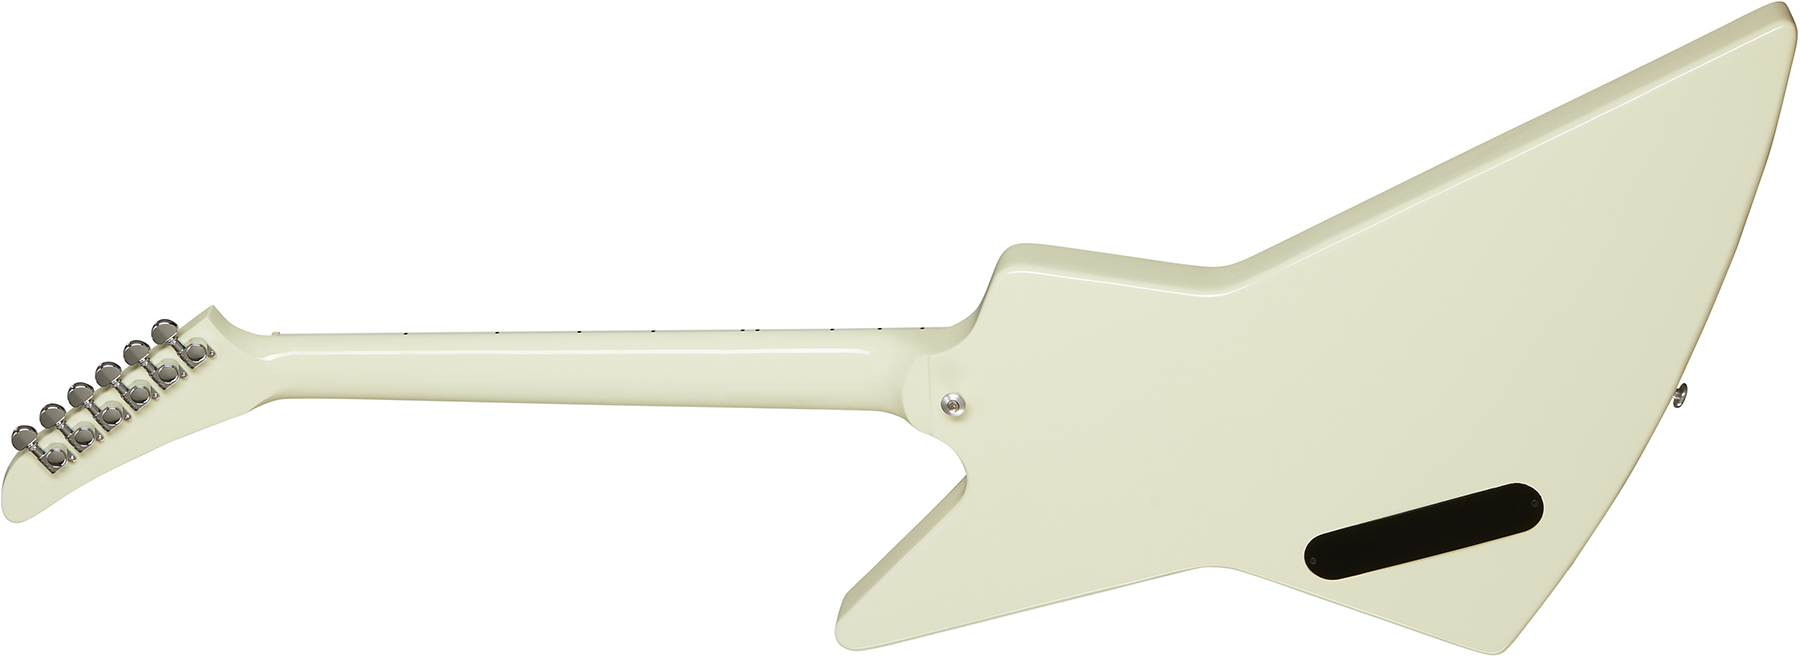 Gibson Explorer 70s Original Gaucher Hh Ht Rw - Classic White - Linkshandige elektrische gitaar - Variation 1